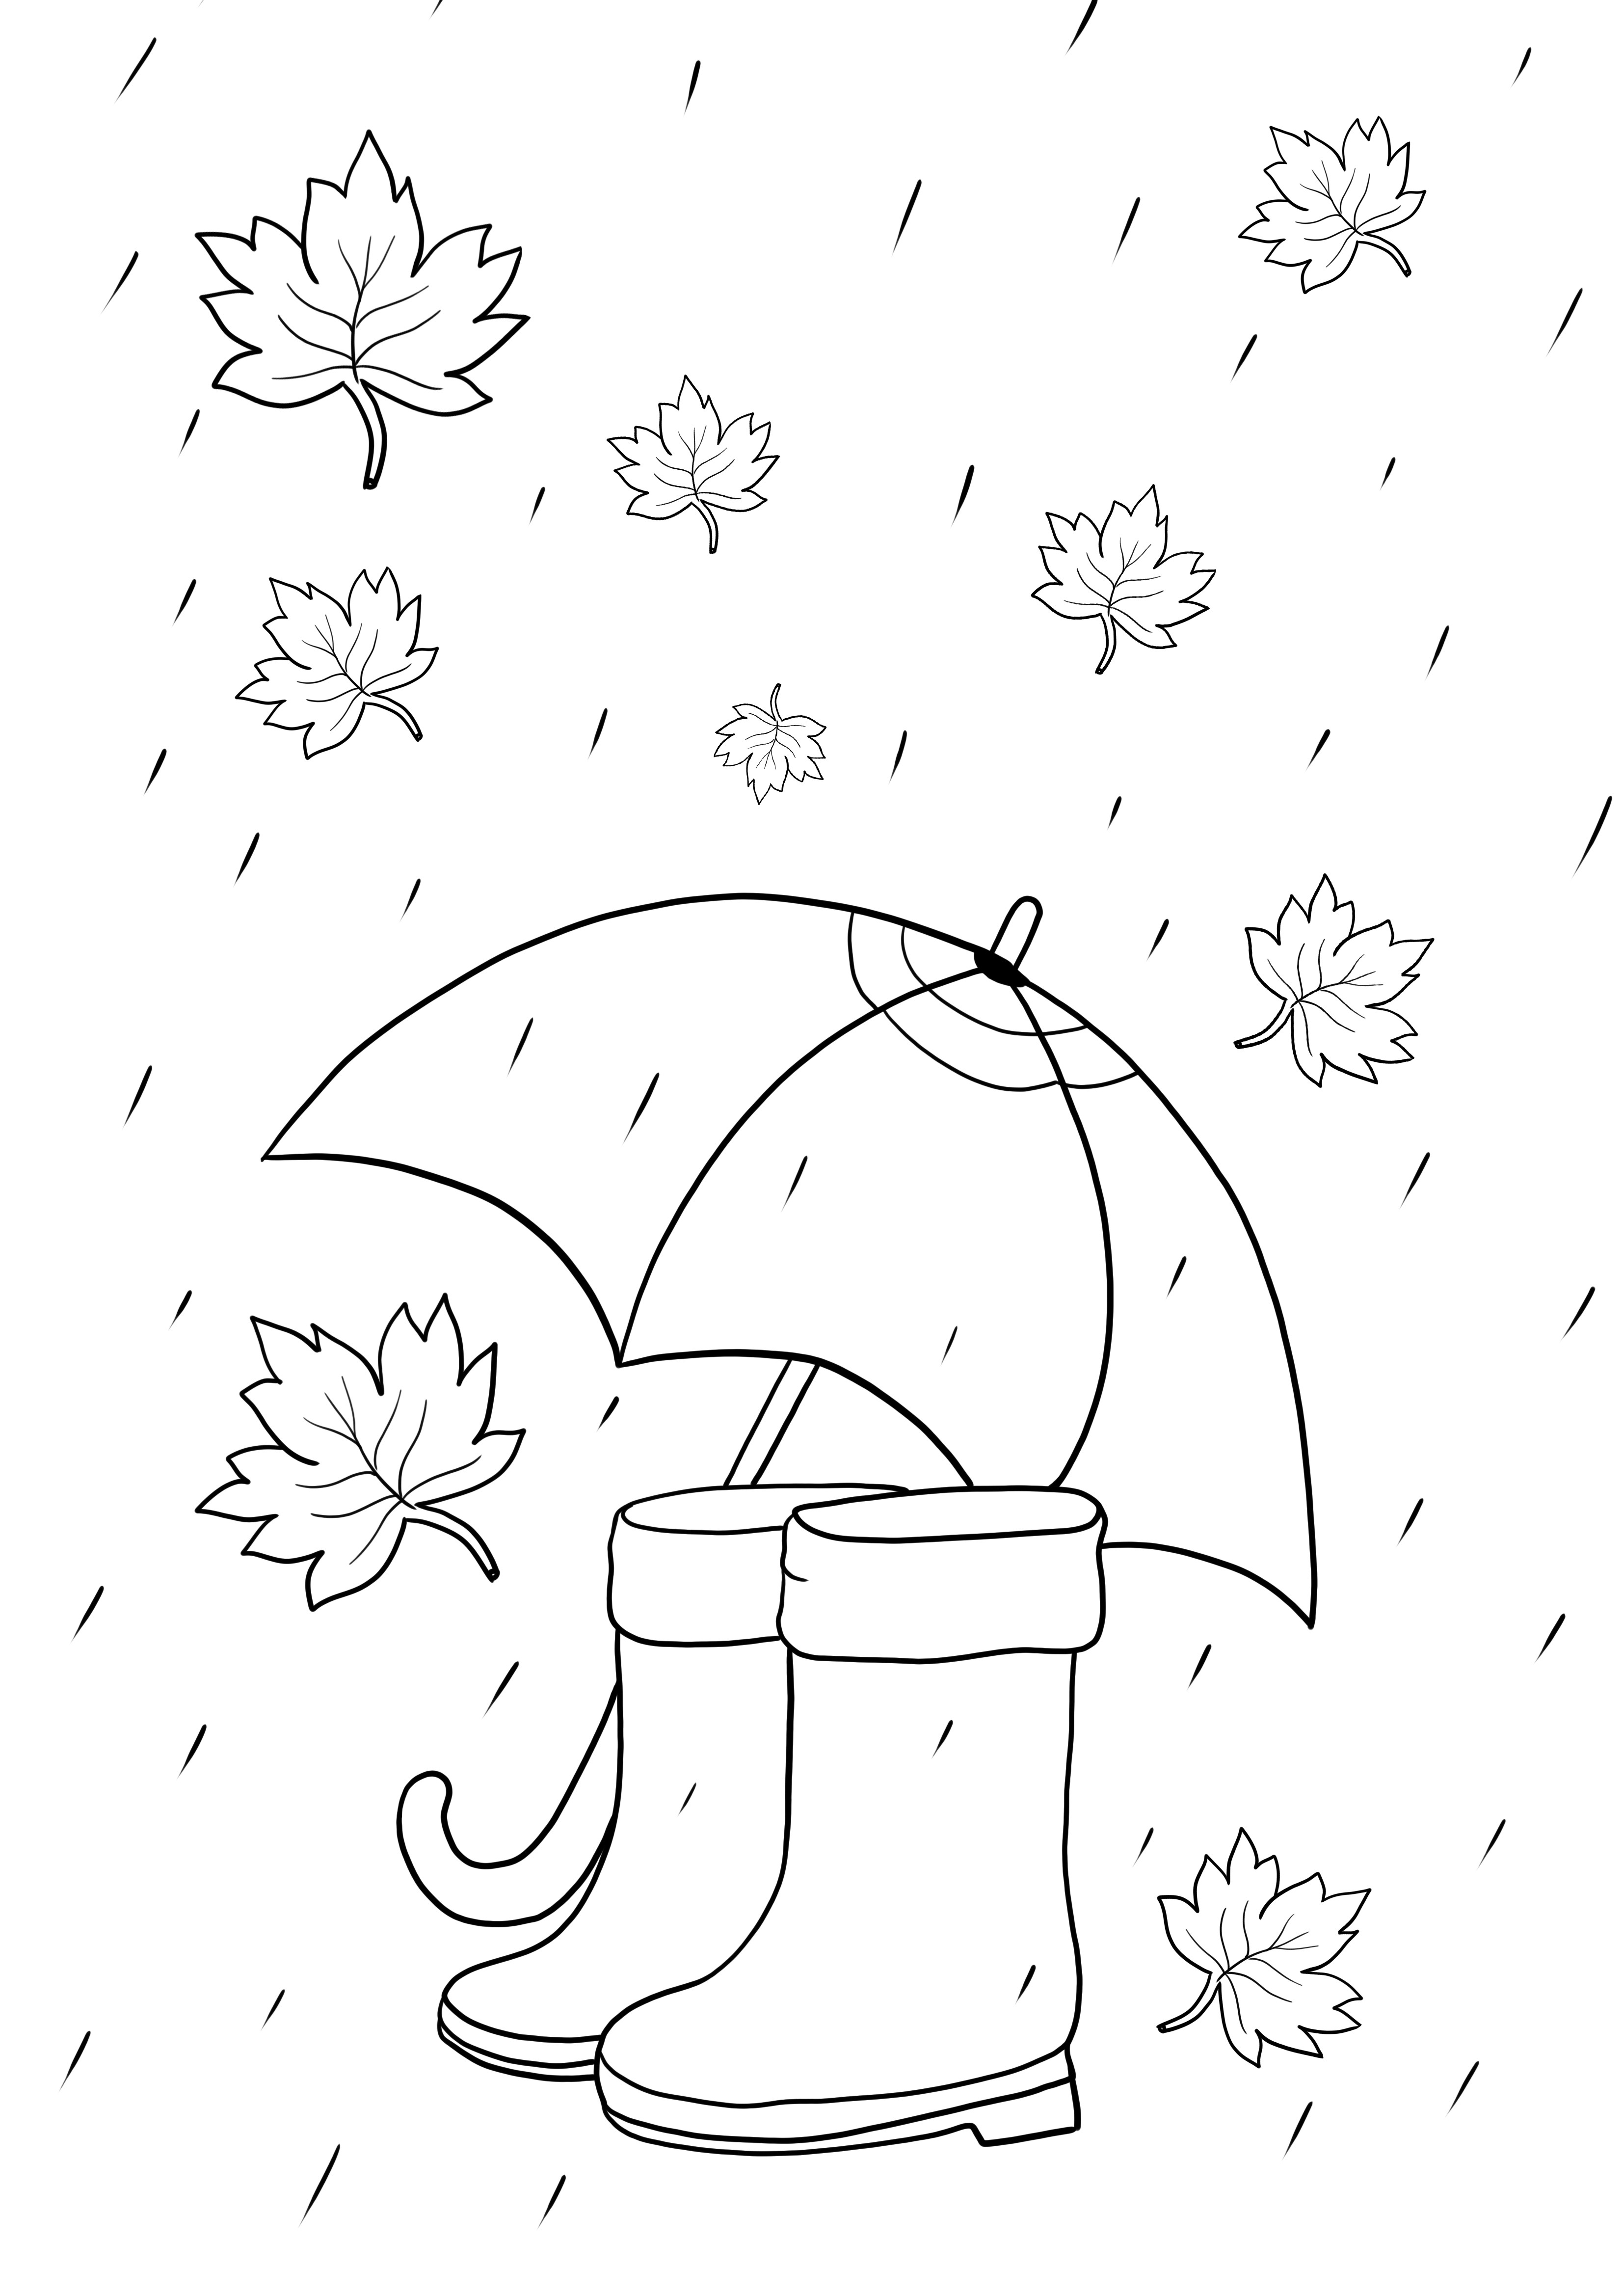 Itens de chuva - guarda-chuva e botas para imprimir ou baixar gratuitamente